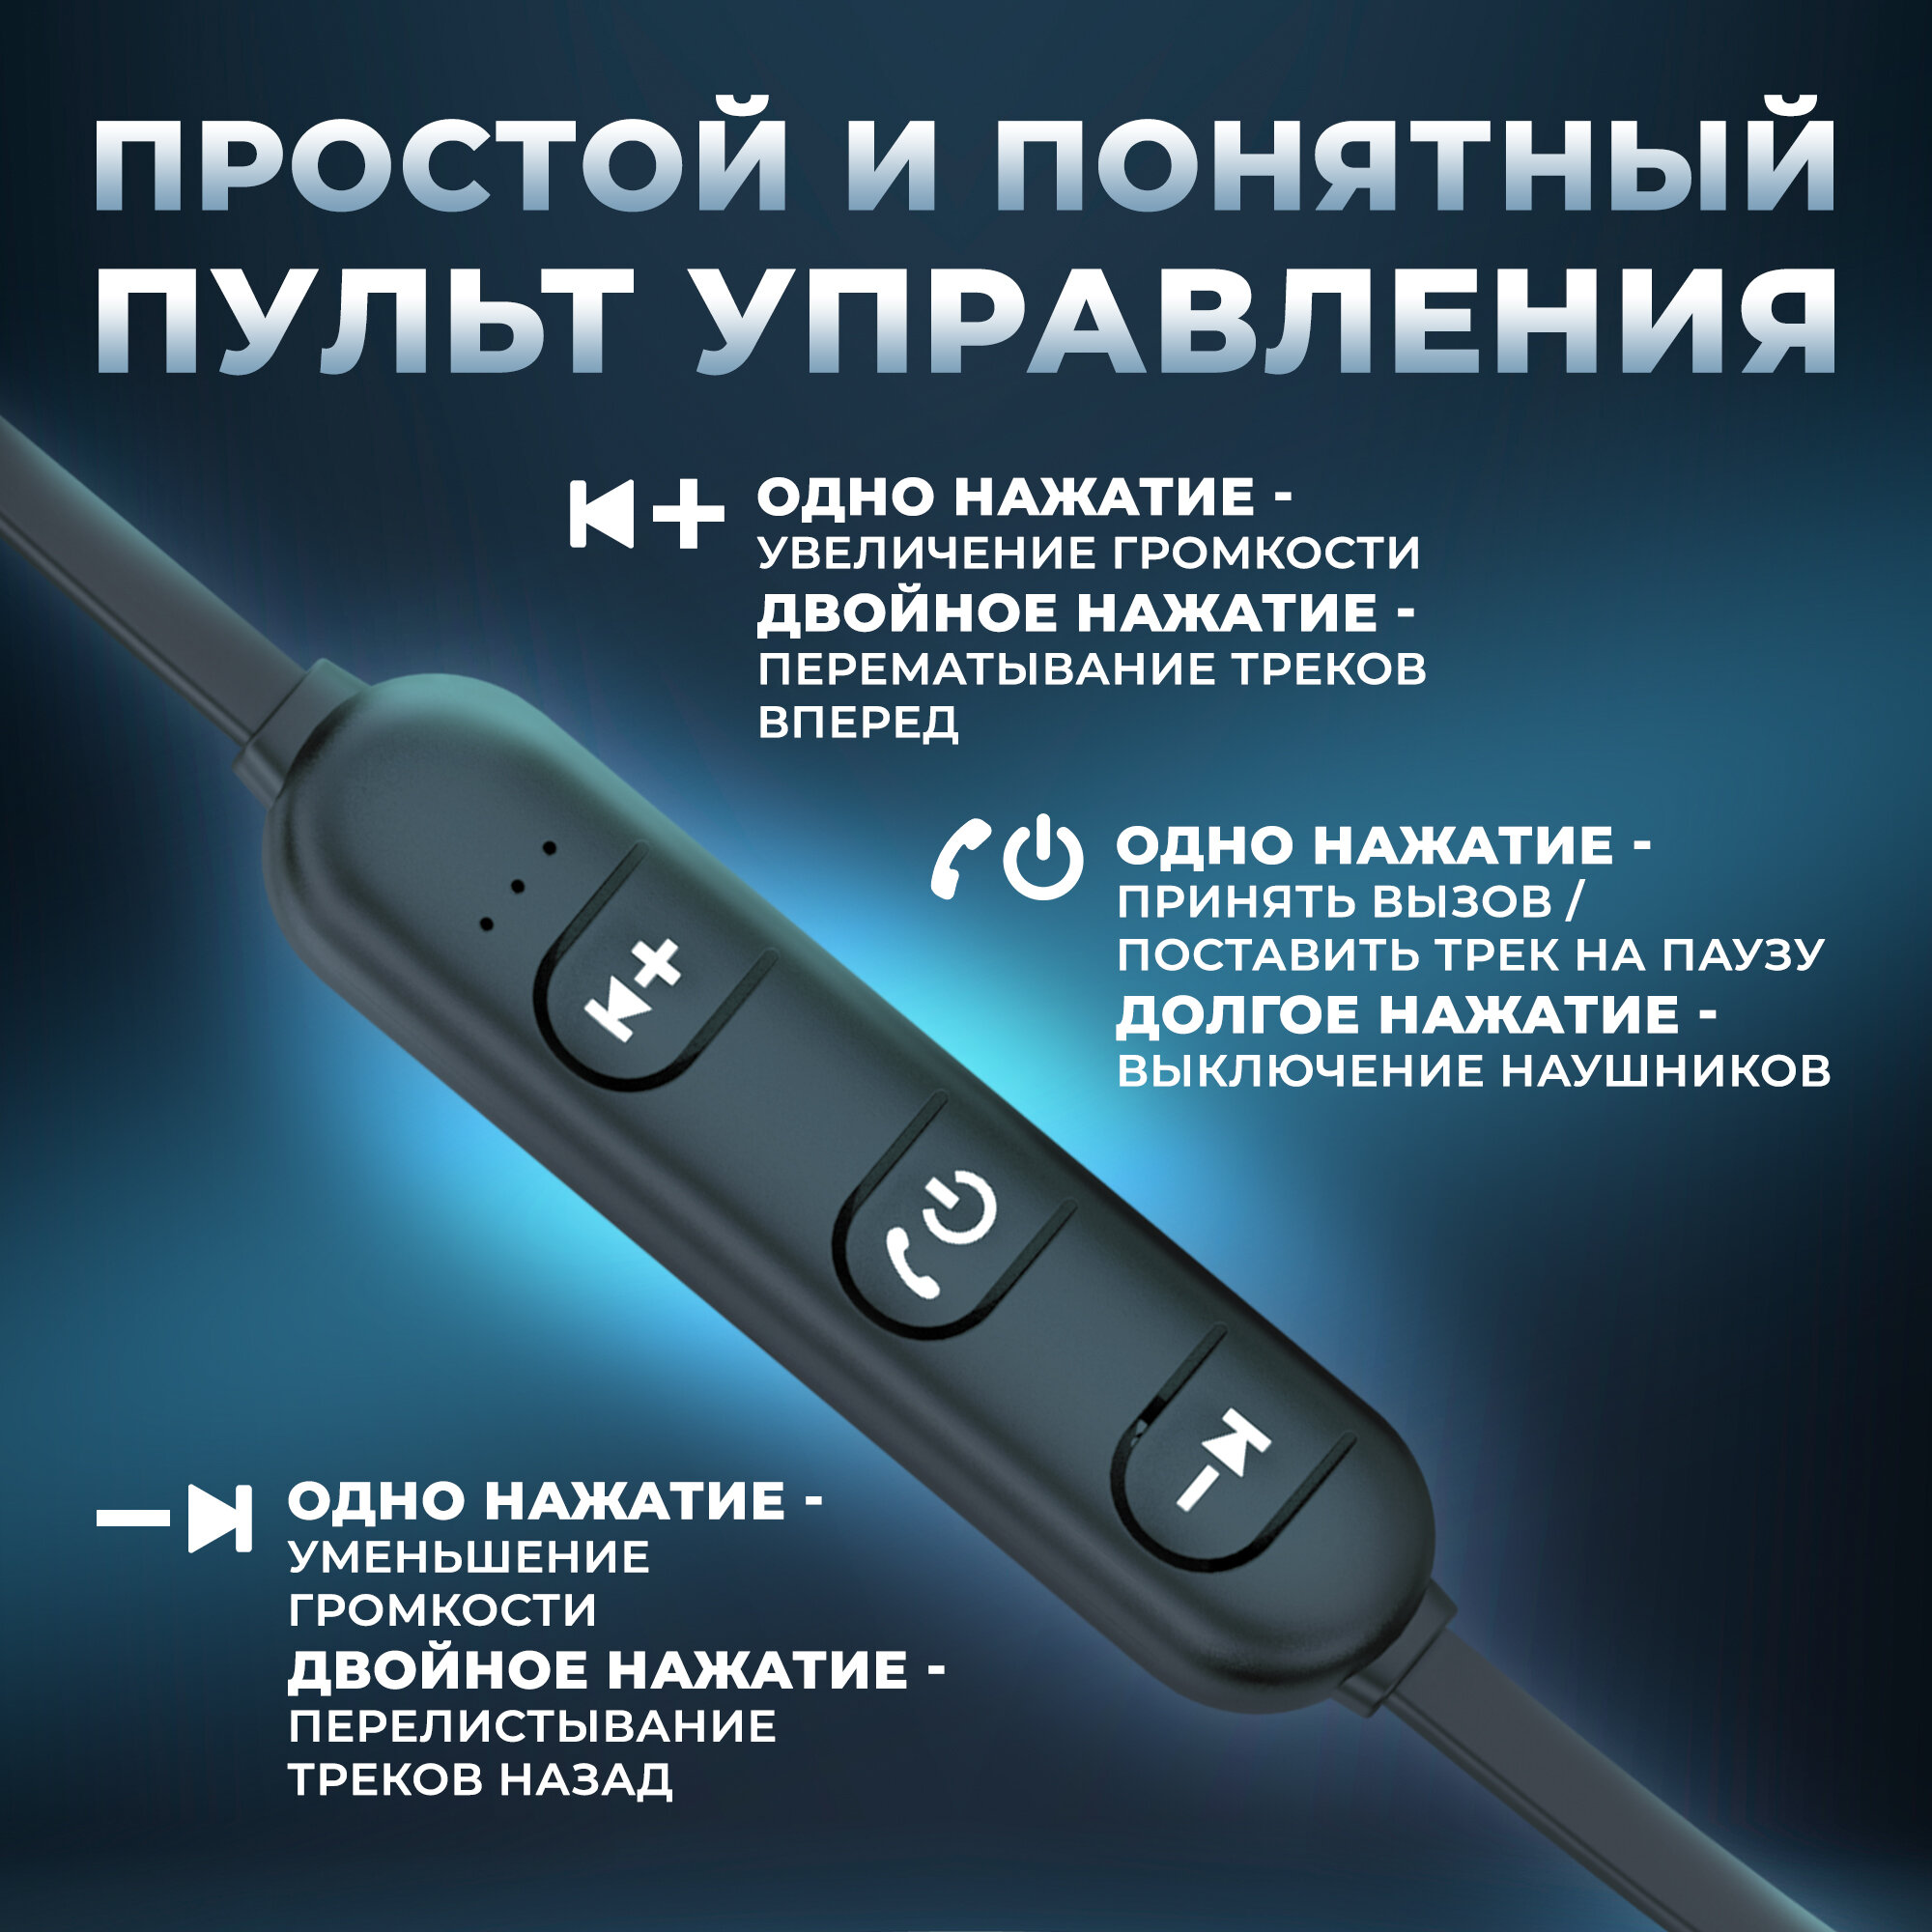 Наушники беспроводные Bluetooth 5.0 на магнитах с микрофоном, AMFOX, AM5, игровая гарнитура для телефона, для смартфона Android, для спорта, черный